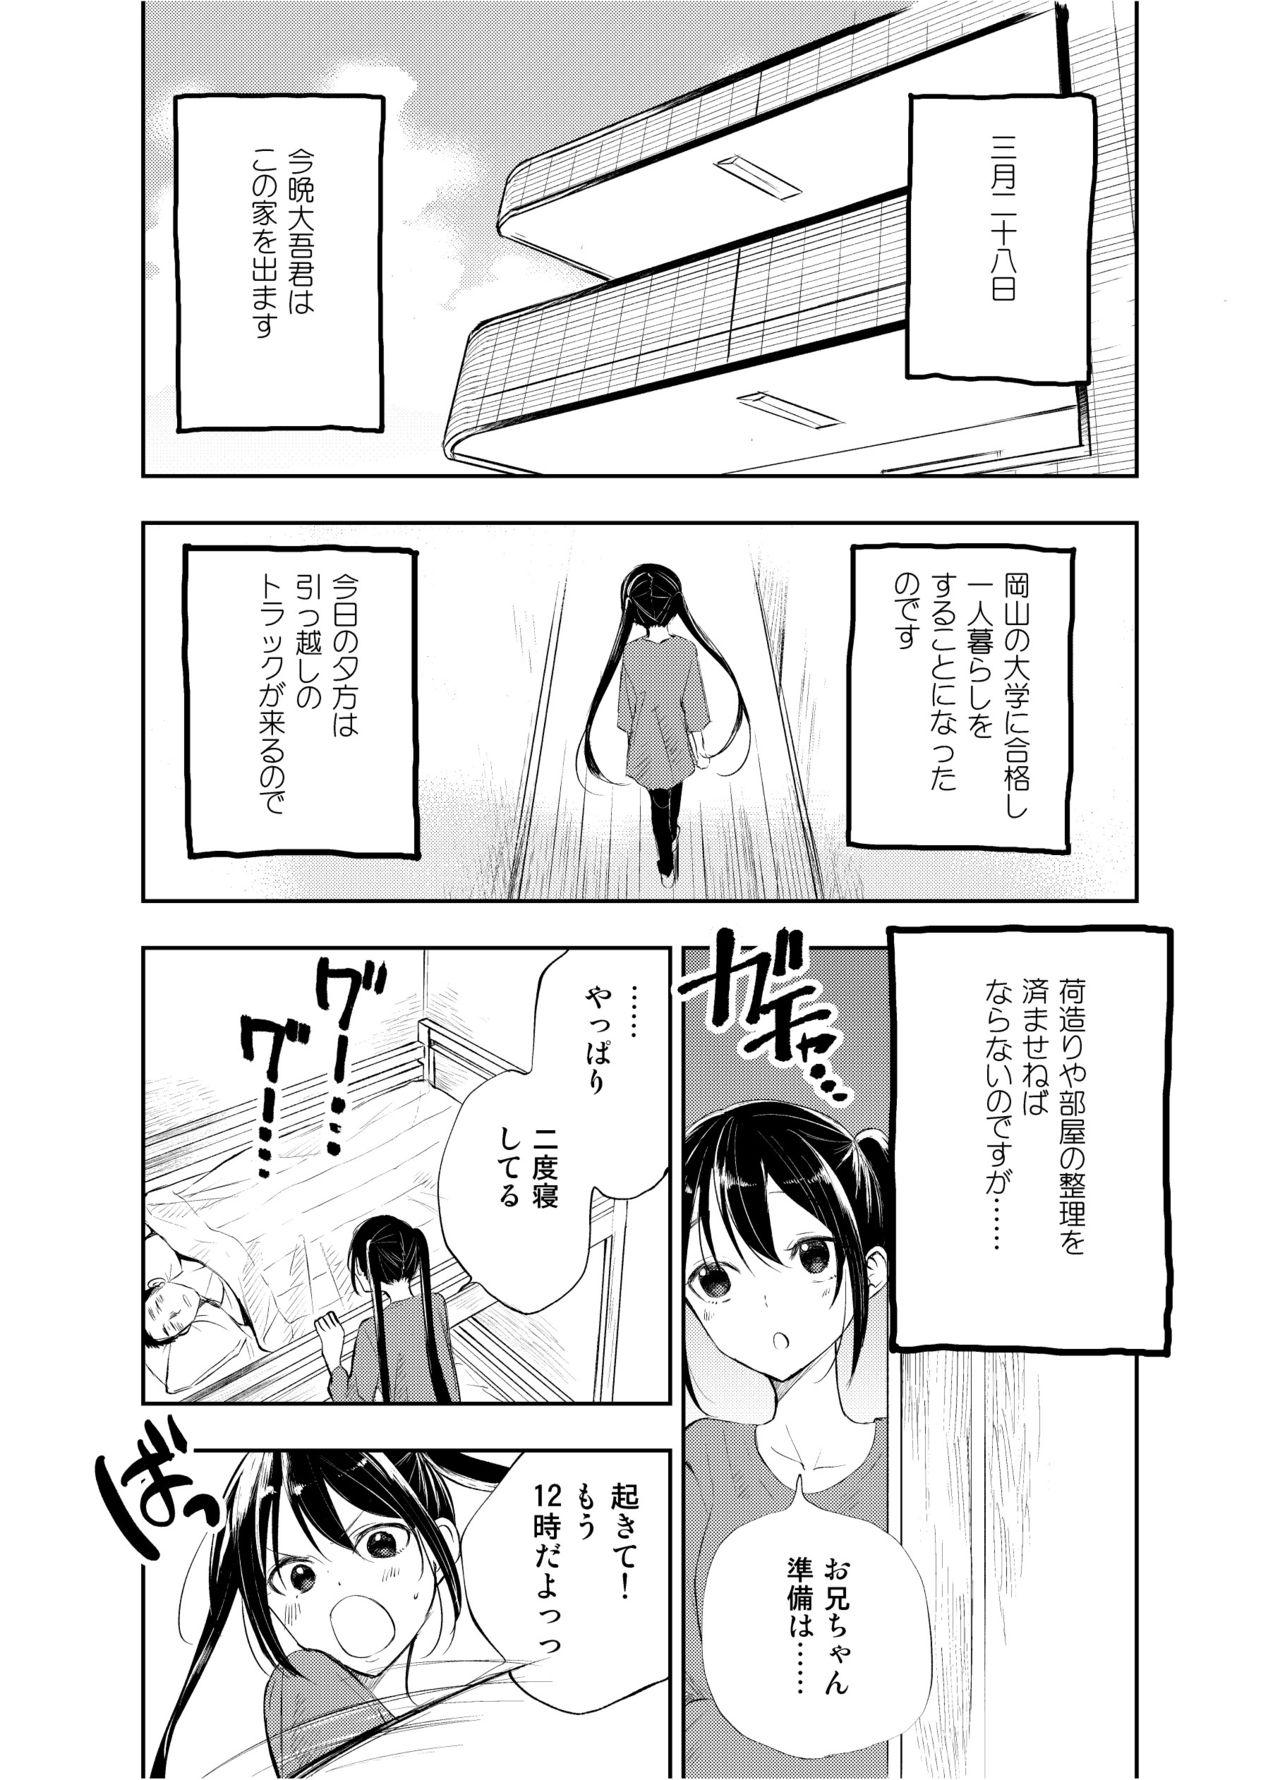 Putinha Onii-chan tte Hontou Ona Saru! 2 Upskirt - Page 2